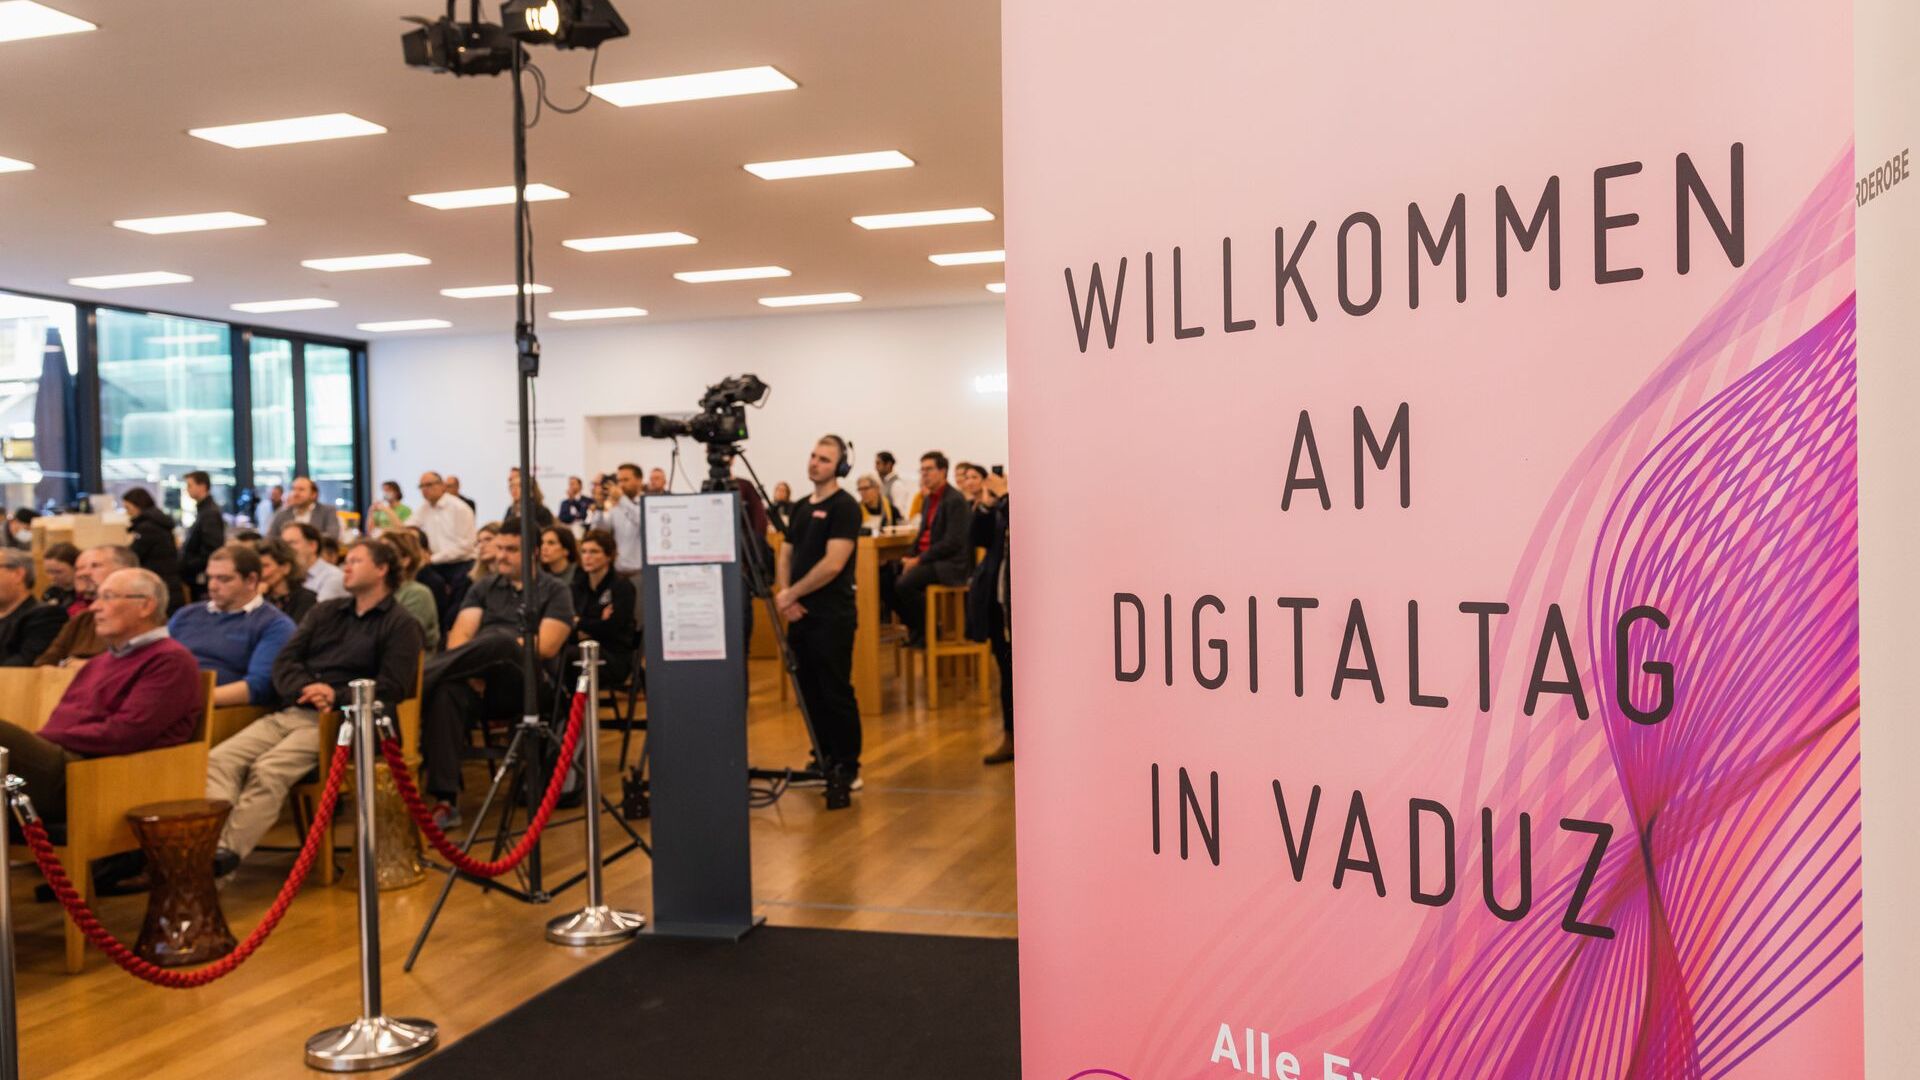 Le "Digitaltag Vaduz" a été accueilli par le Kunstmuseum de la capitale de la Principauté du Liechtenstein le samedi 6 novembre 2021